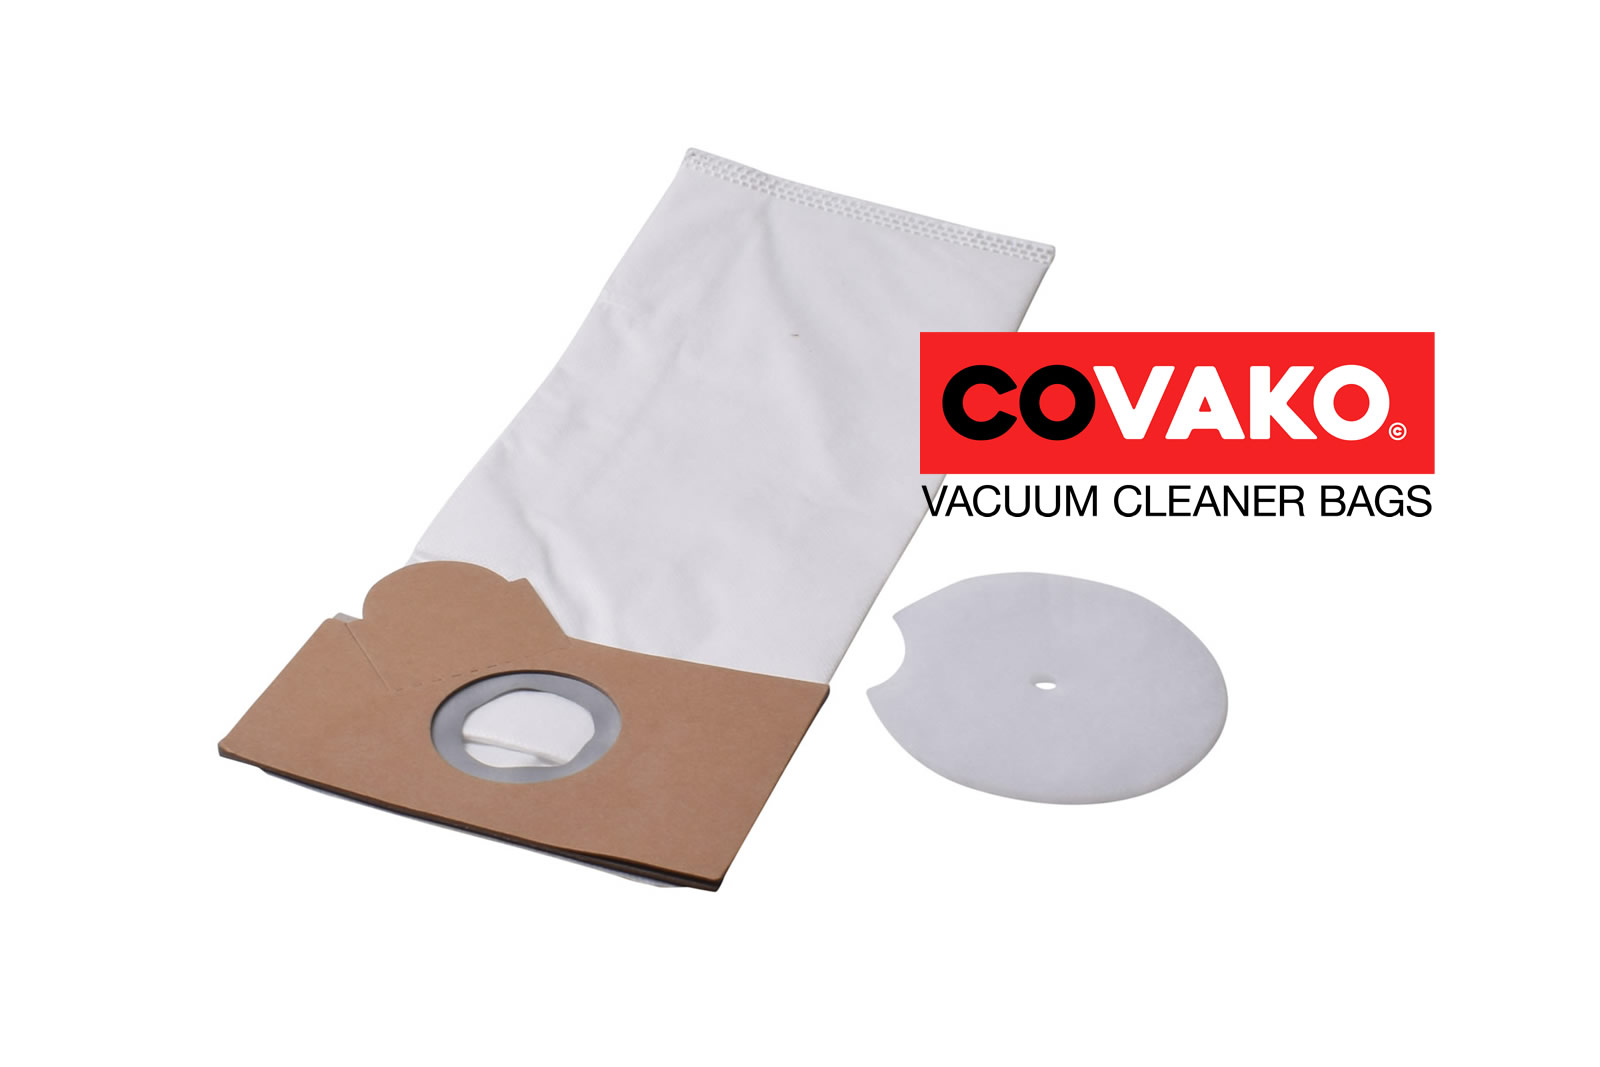 Fakir Combi 17-30 / Synthesis - Fakir vacuum cleaner bags